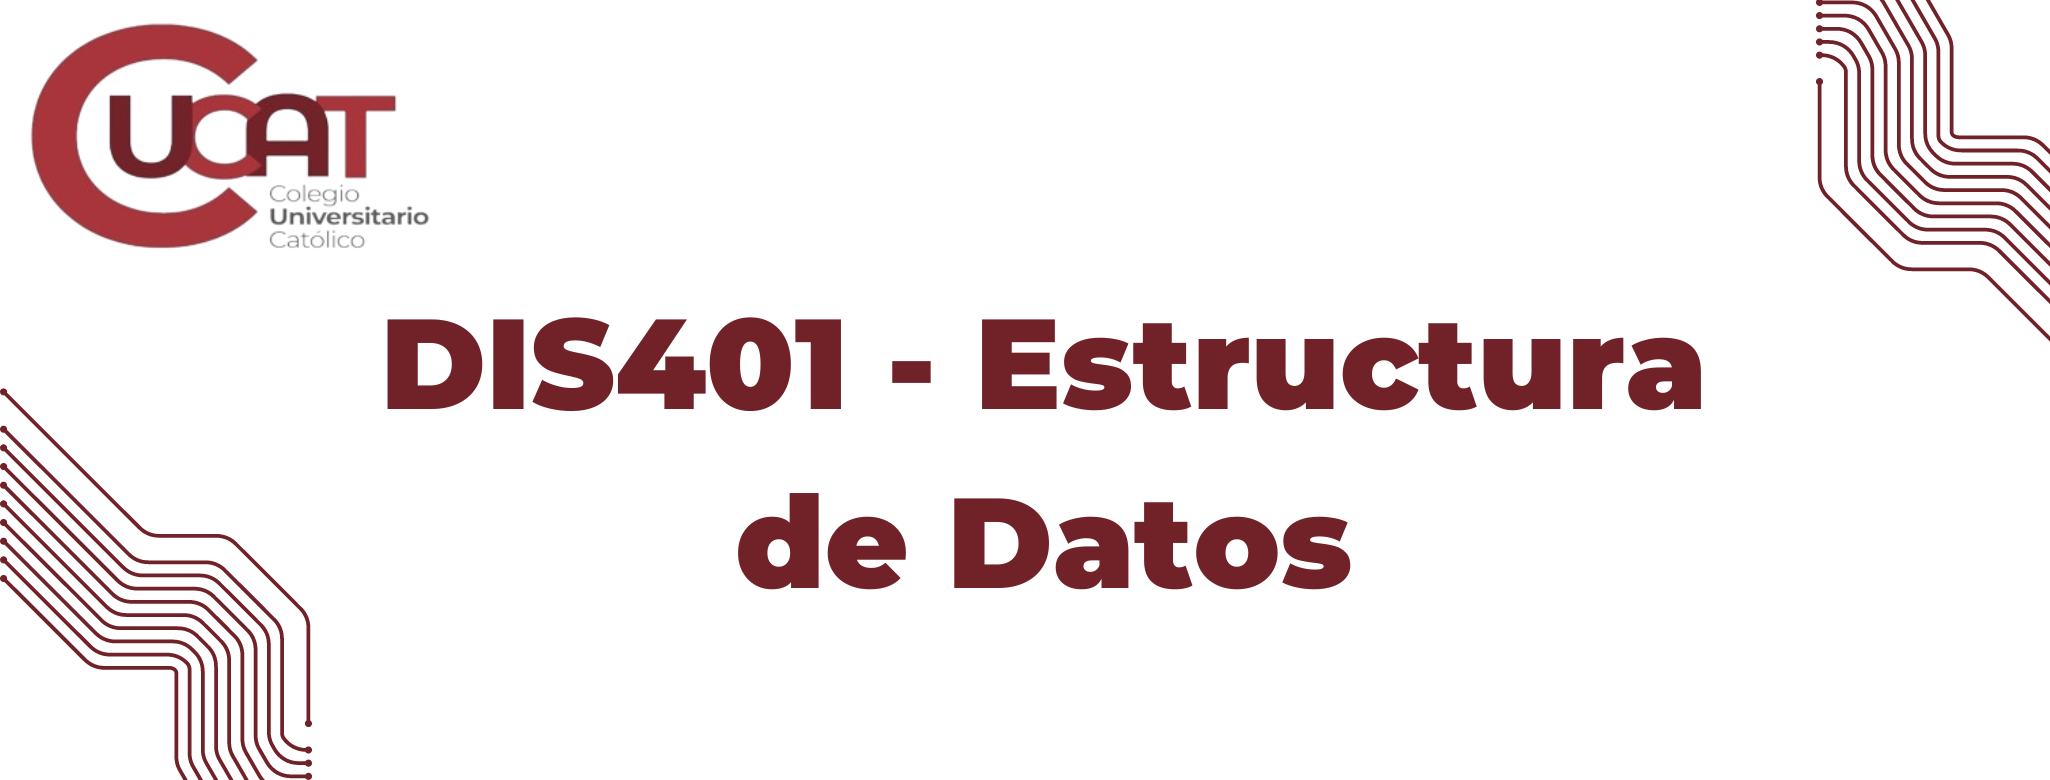 DIS401-Estructura de Datos